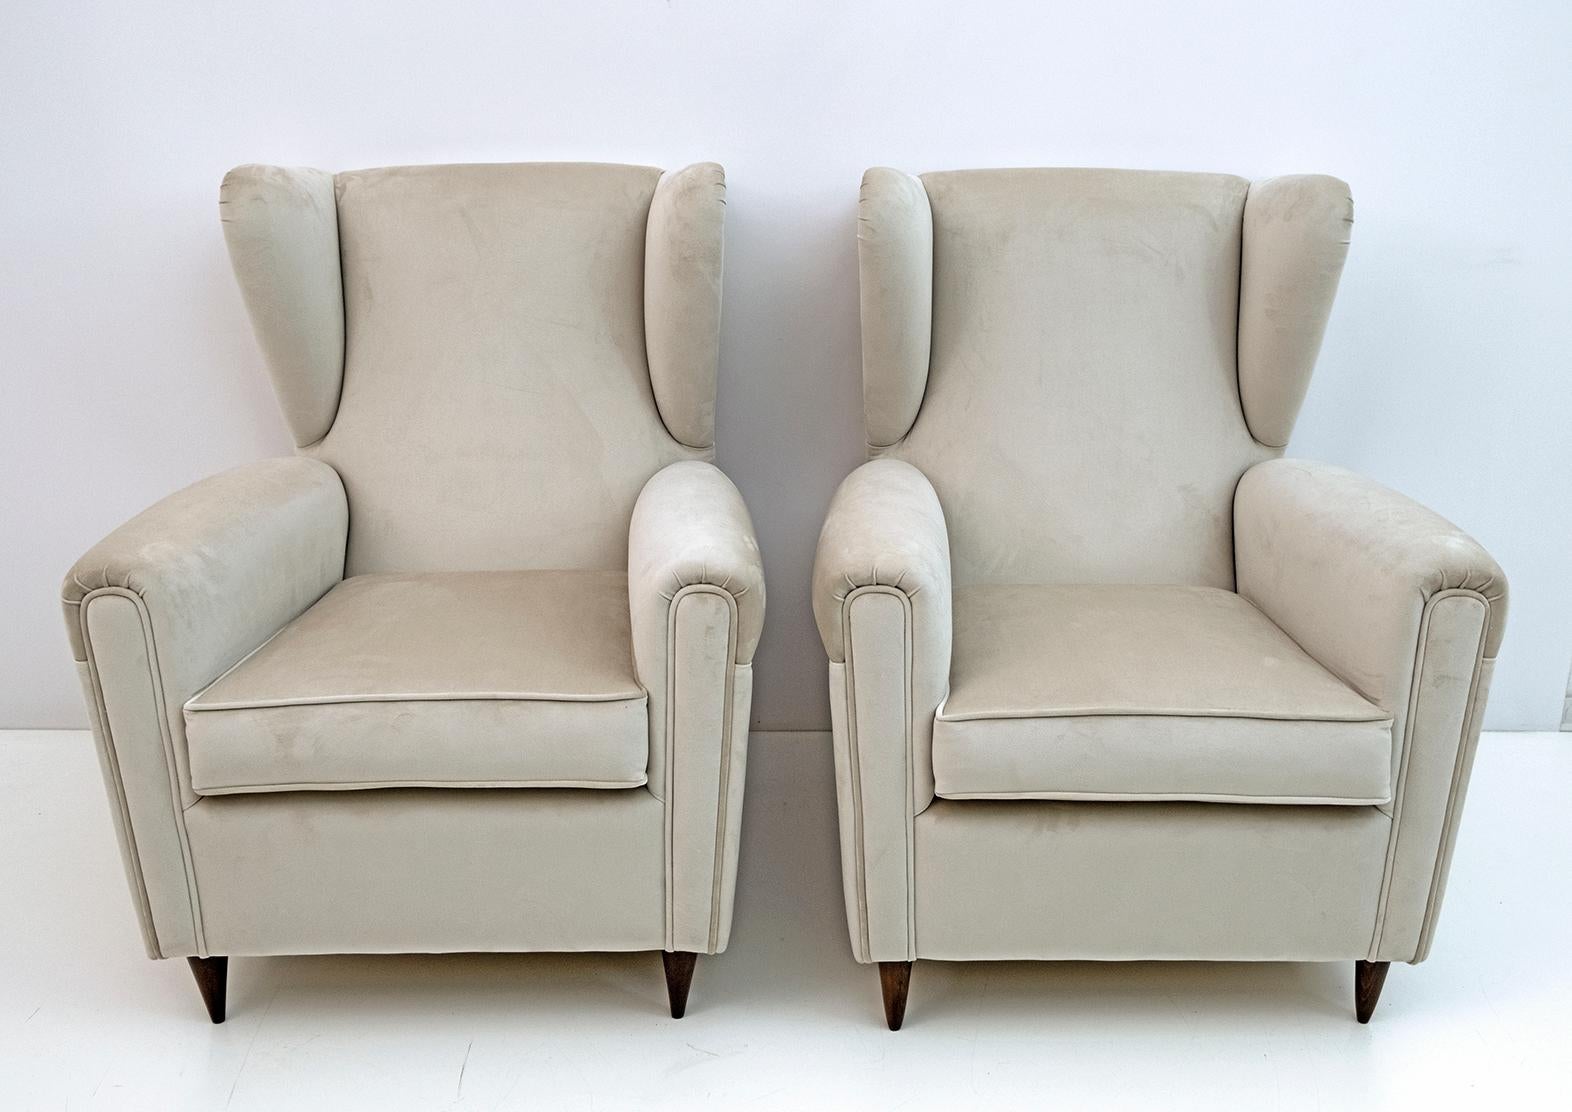 Élégante et splendide paire de fauteuils bergères modernes du milieu du siècle, attribuée à Gio Ponti, 1950 pour ISA Editions, Bergame. Les fauteuils sont recouverts d'un nouveau velours ivoire clair.